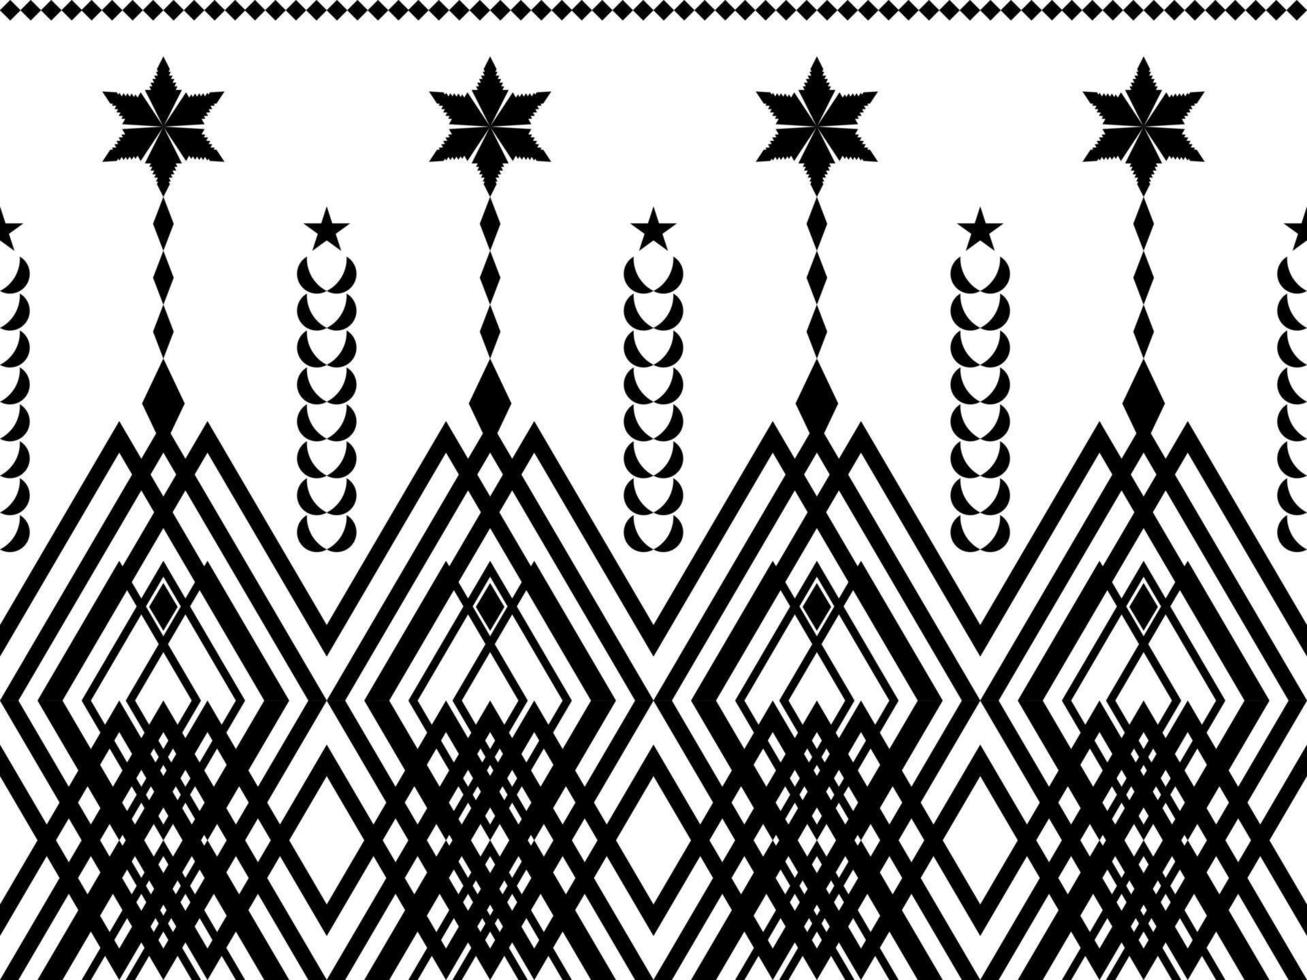 design de padrão geométrico étnico abstrato para plano de fundo ou wallpaper.ethnic impressão geométrica padrão design asteca repetindo a textura de fundo em preto e branco. tecido, design de pano, embrulho vetor